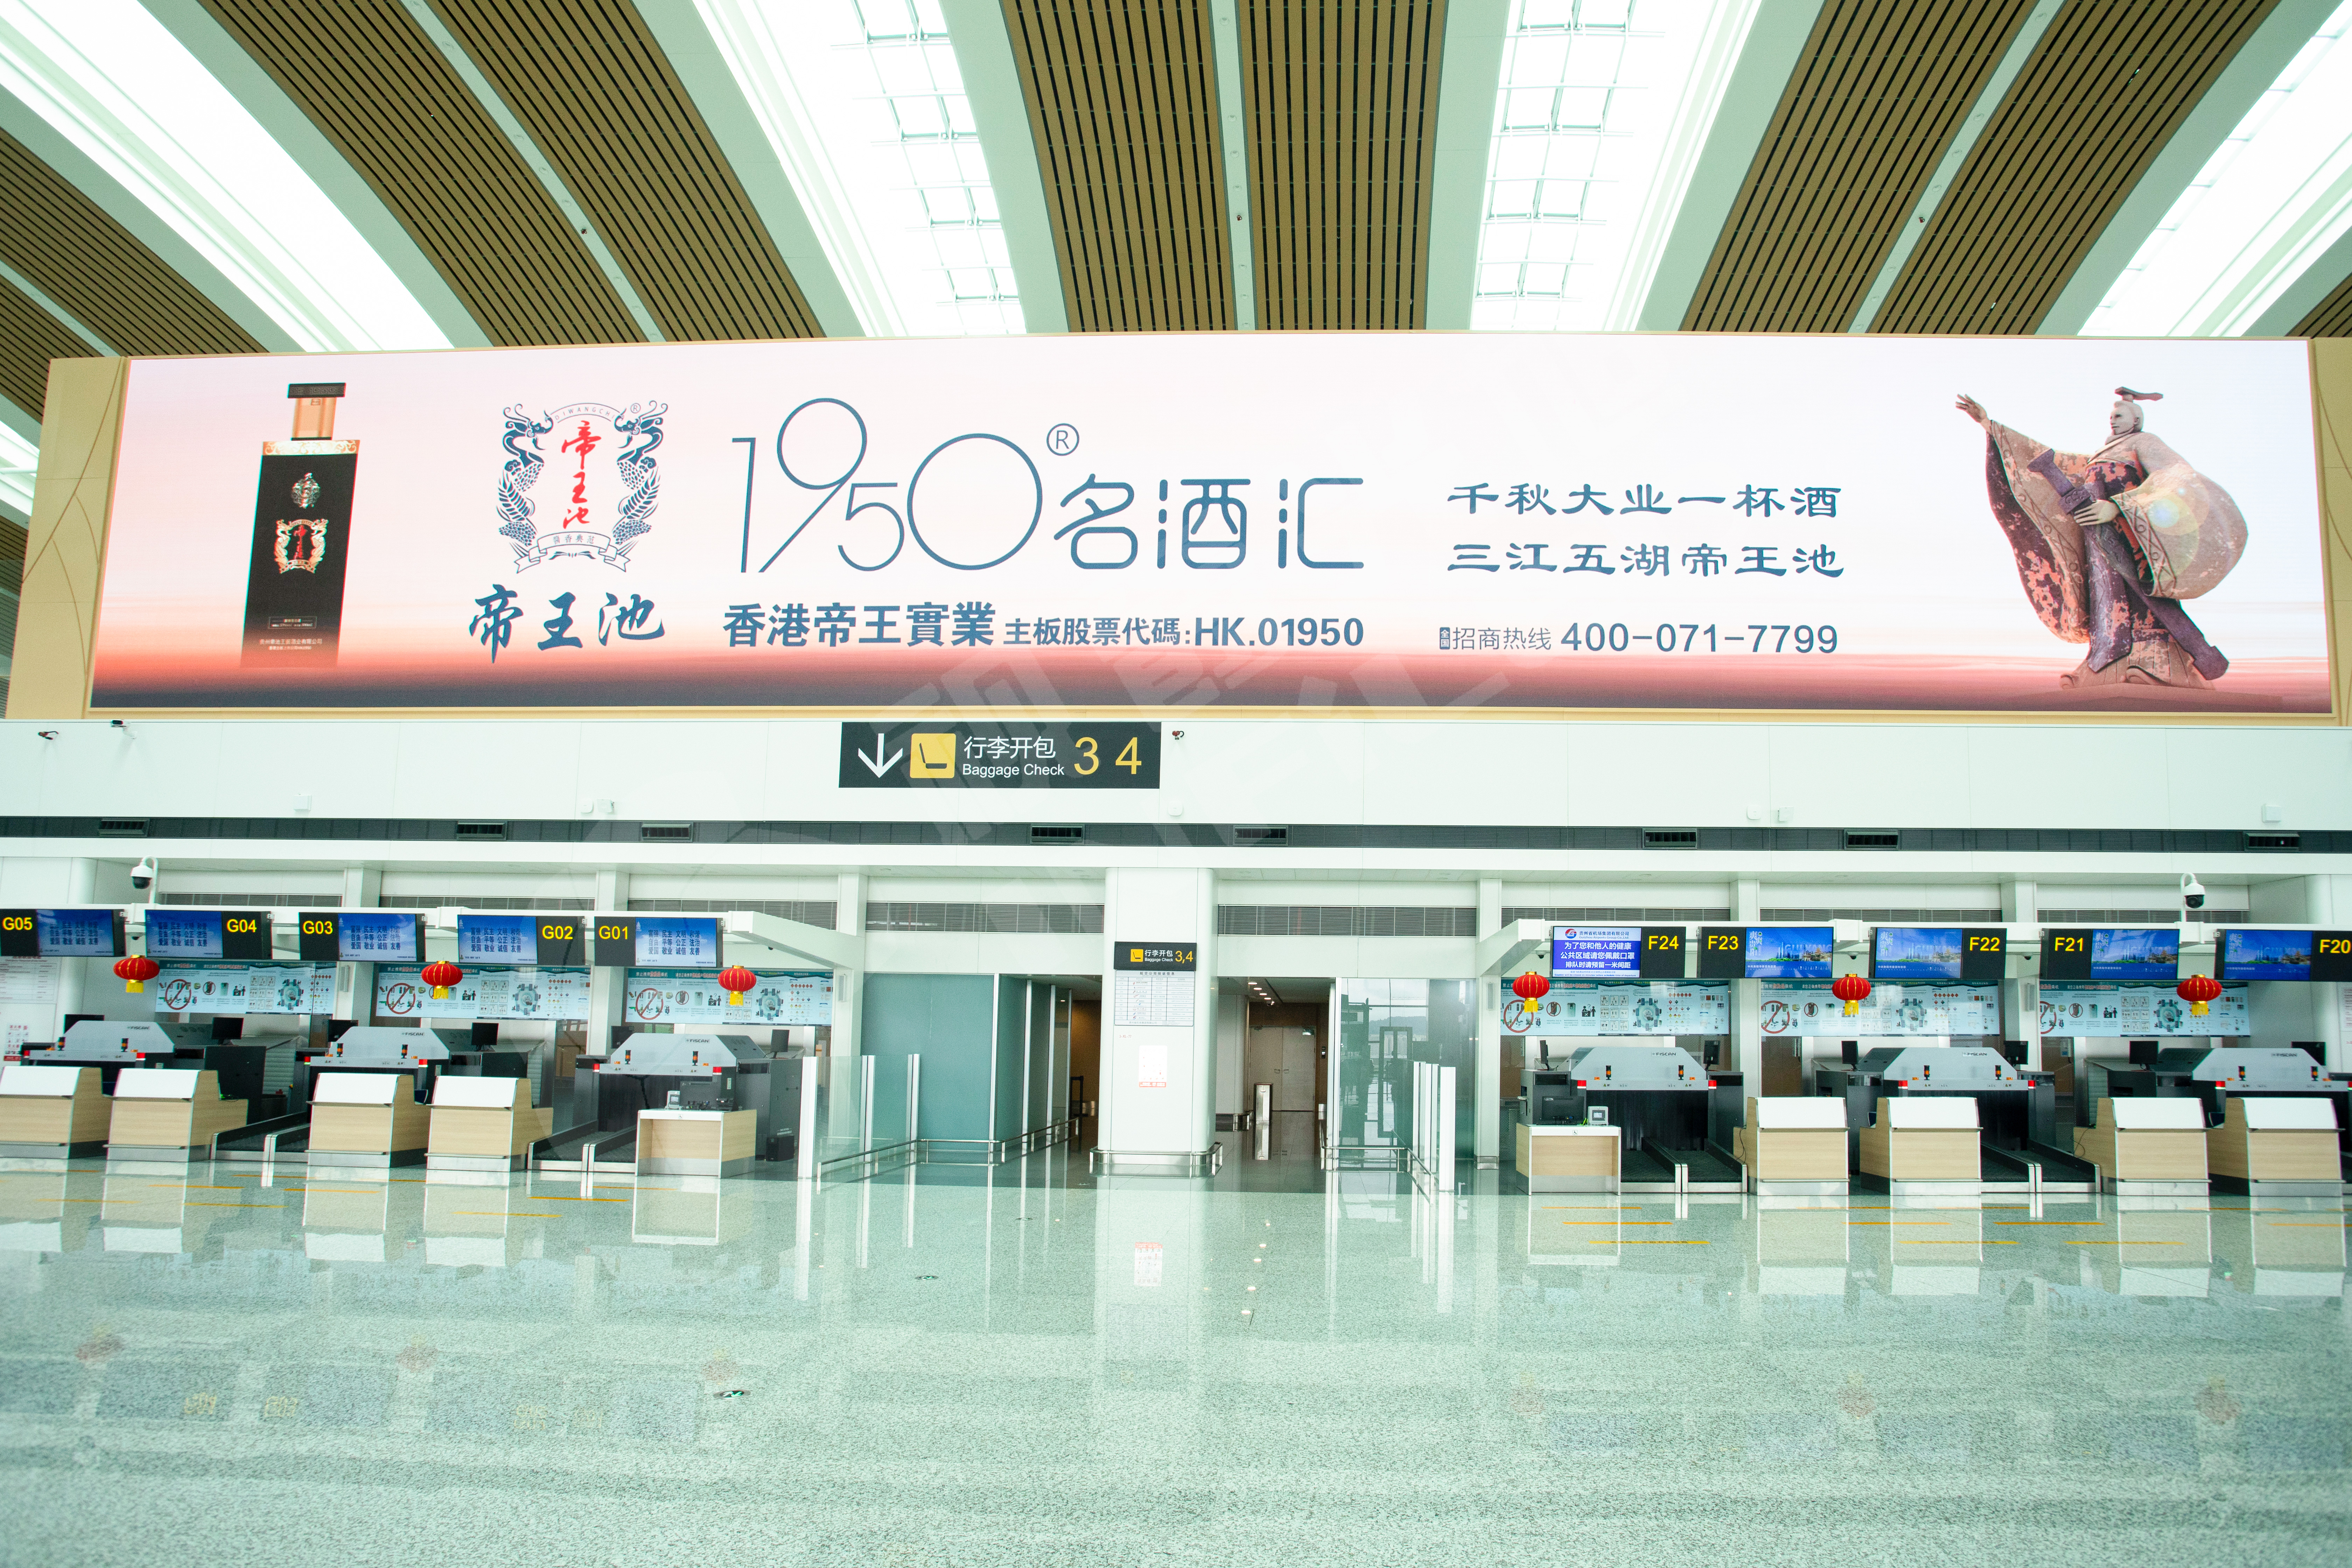 视爵光旭为贵州贵阳龙洞堡国际机场进行数字化升级在四楼出发大厅安装有一块总面积达216㎡的LED广告大屏